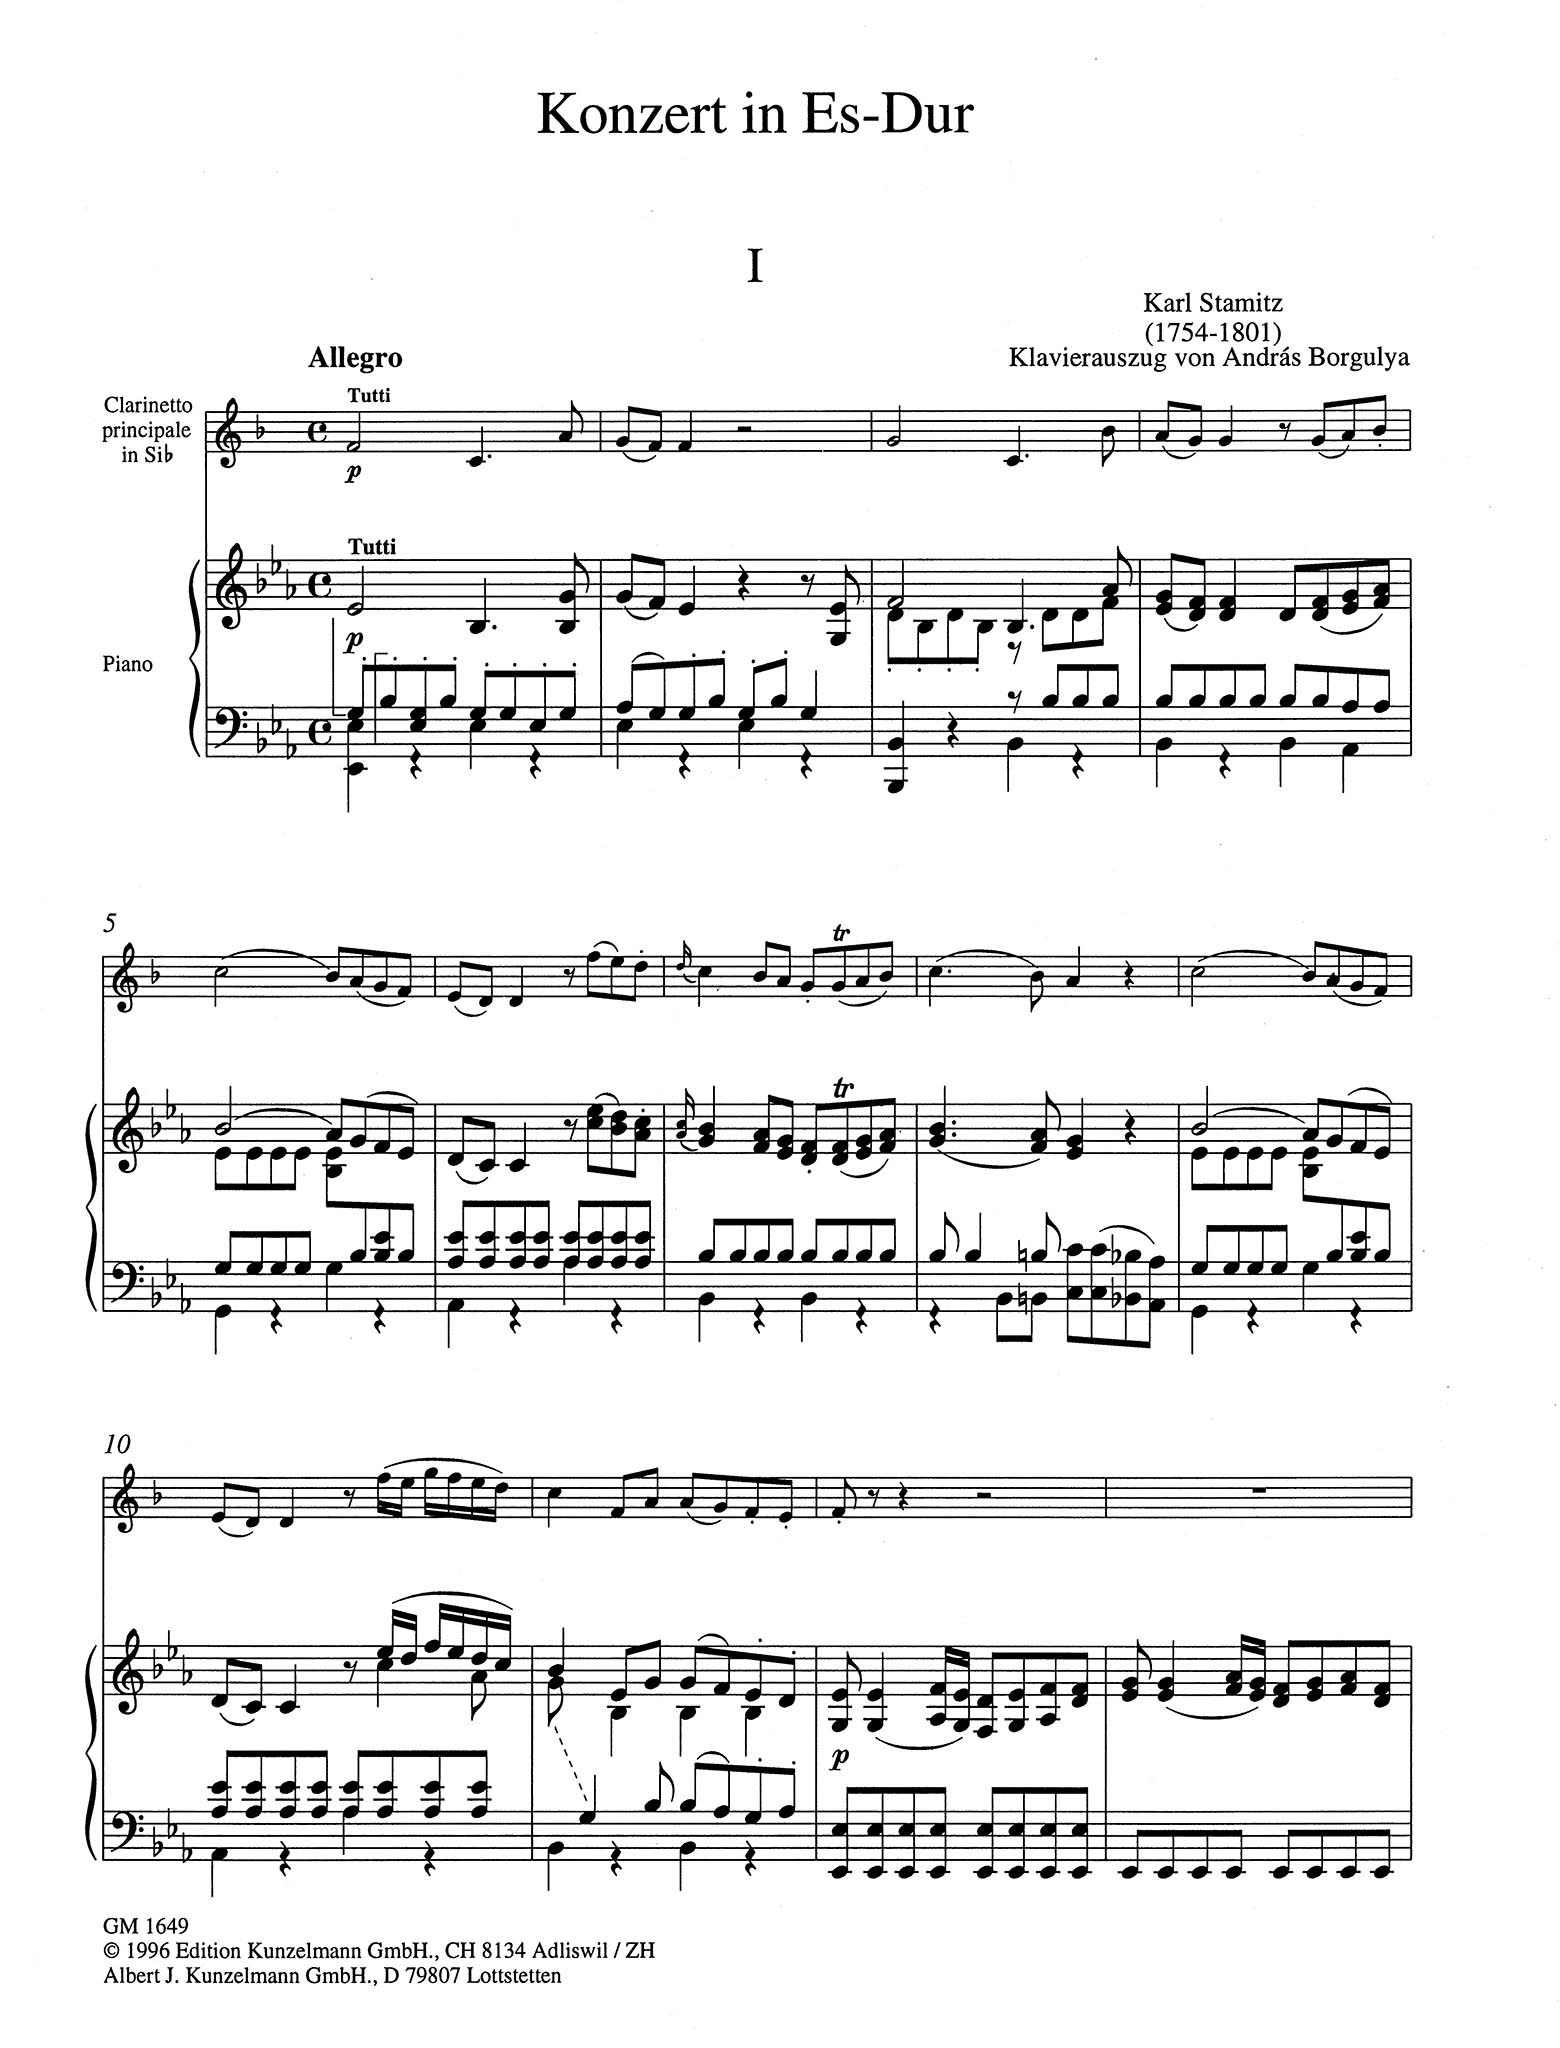 Clarinet Concerto No. 6 (Kaiser) in E-flat Major - Movement 1